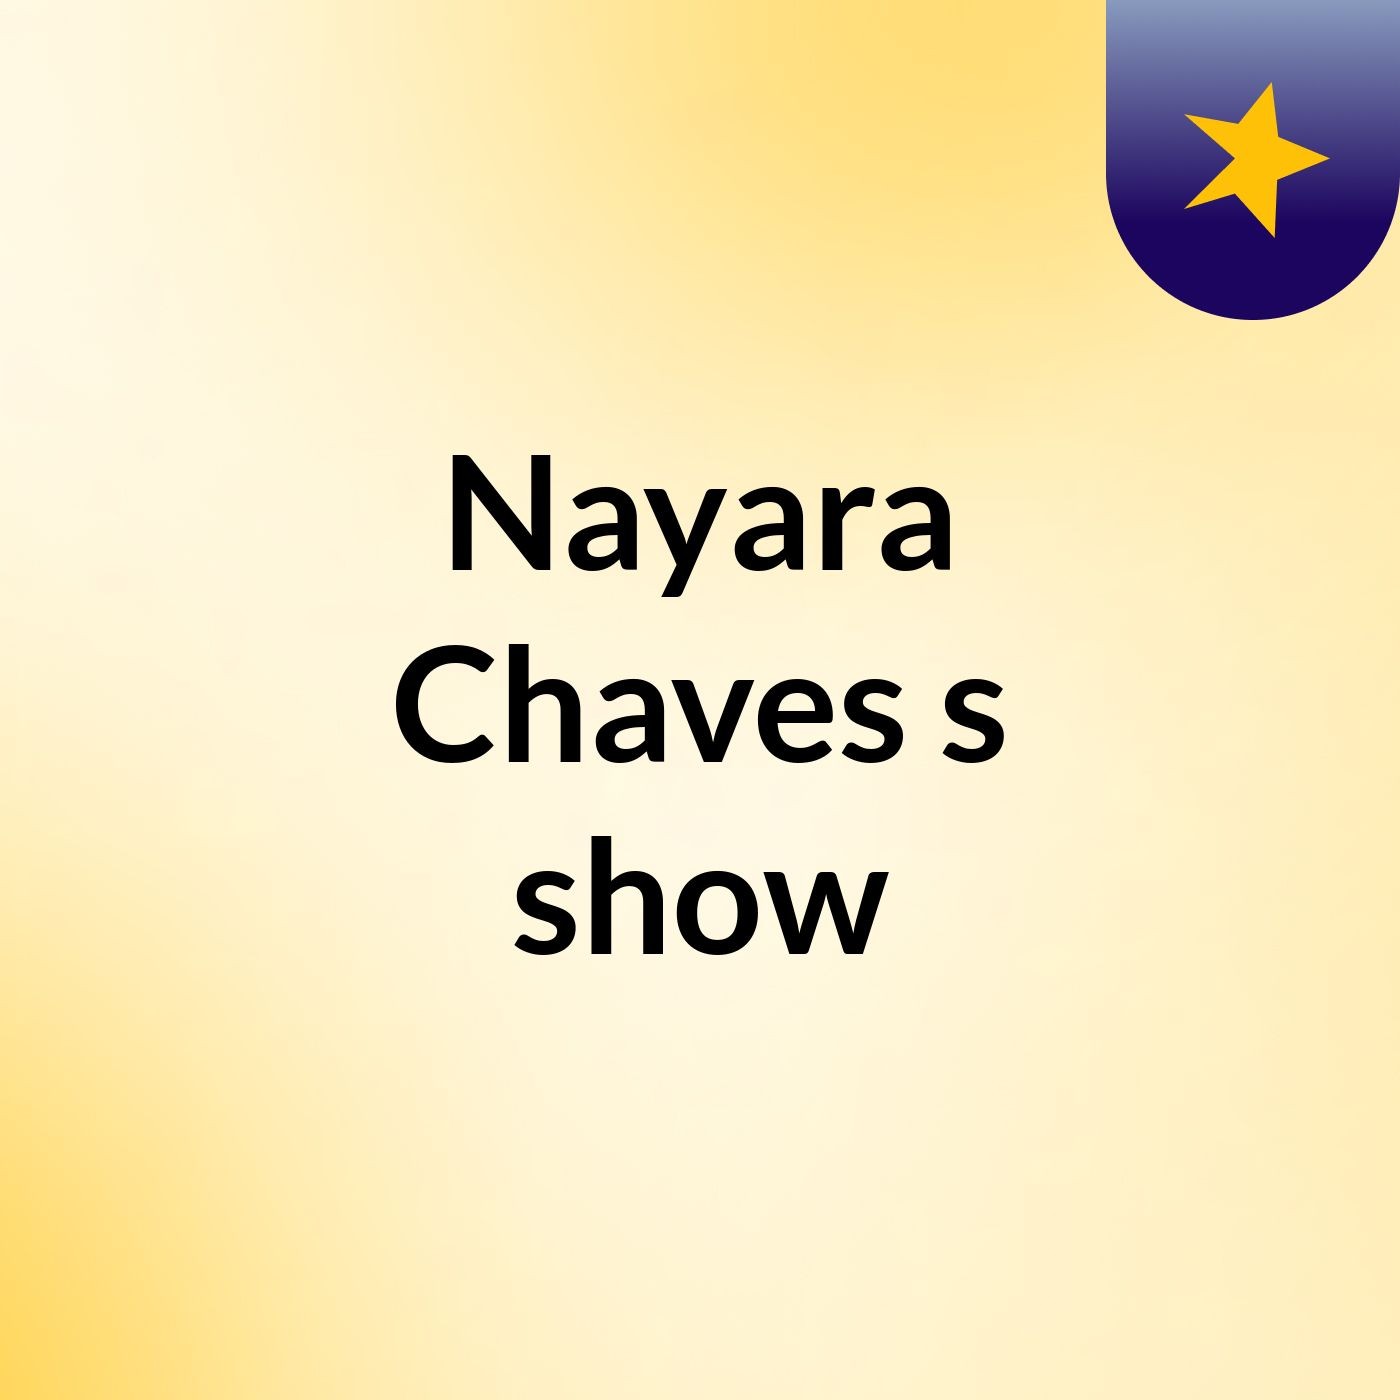 Comunicação integrada - Nayara Chaves's show